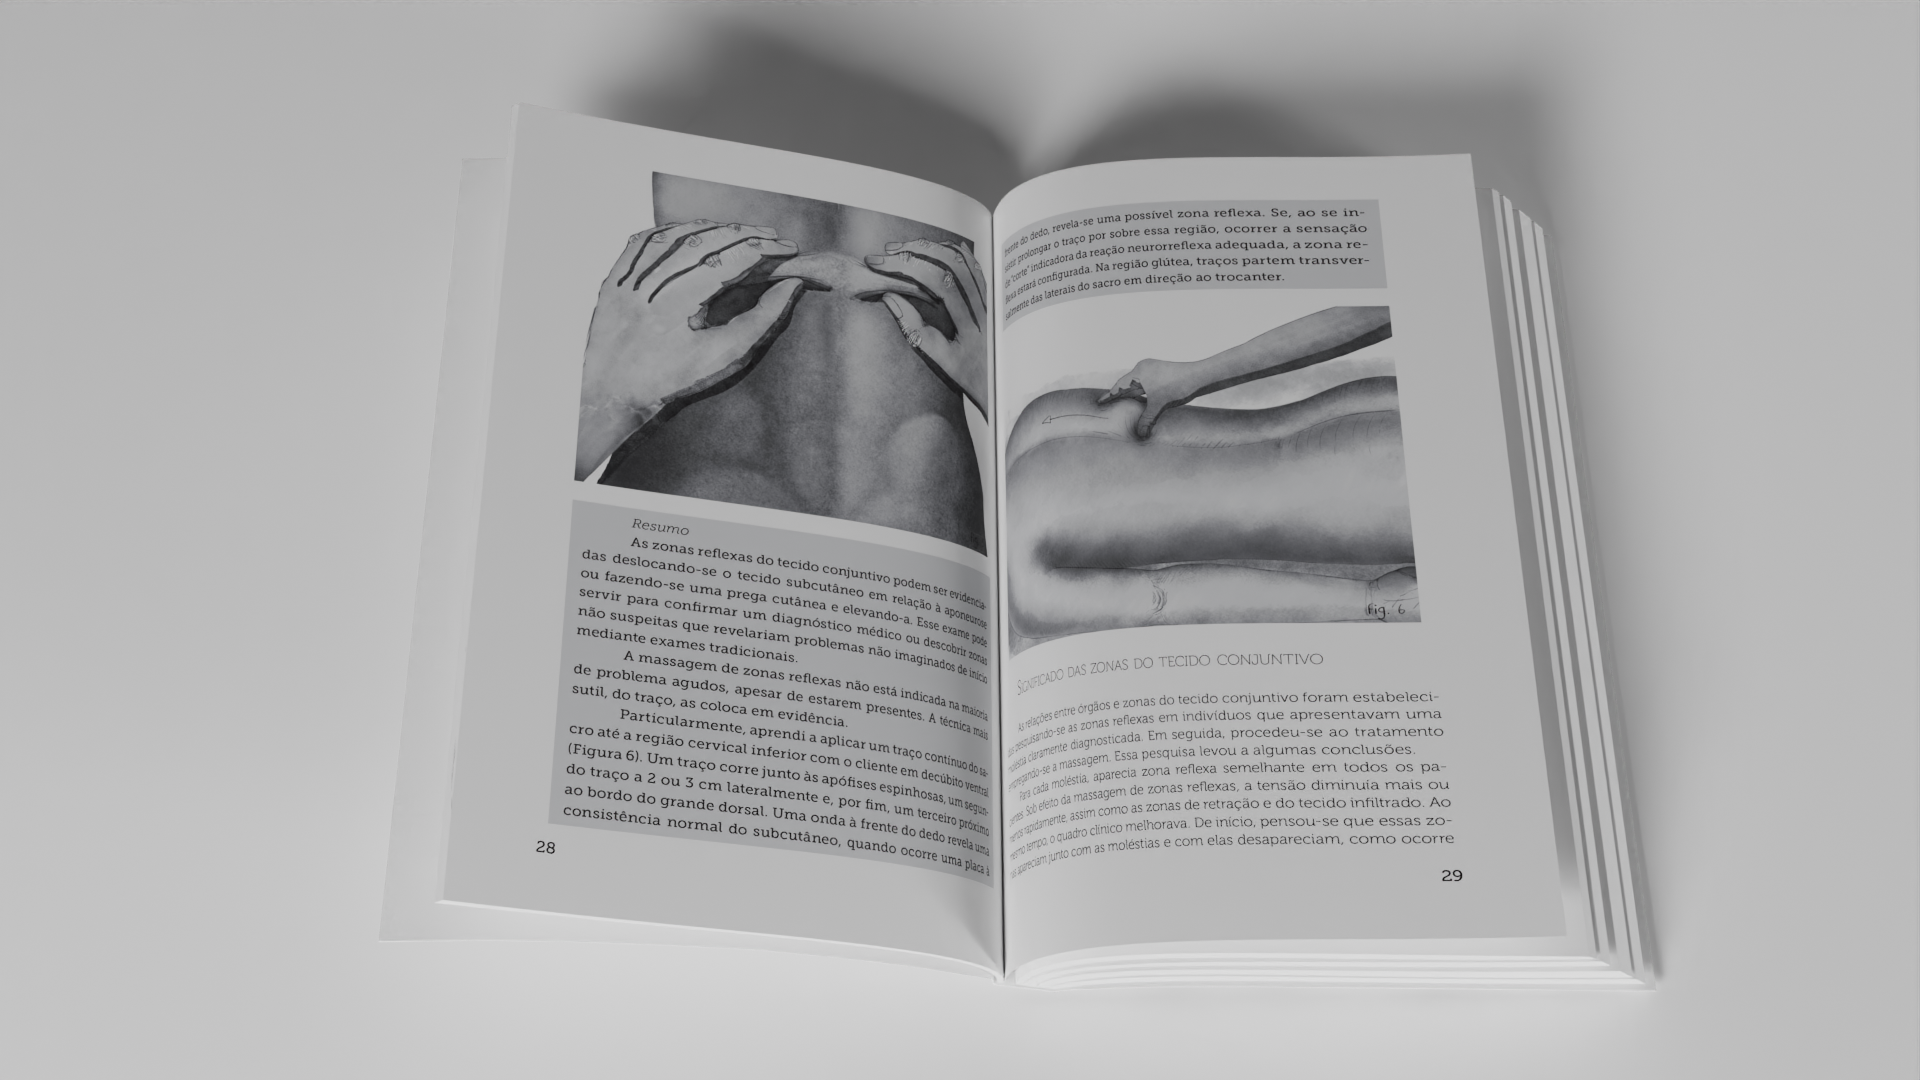 Ilustrações e design do interior do livro "Em Movimento", mockup 3D em Blender/Cycles